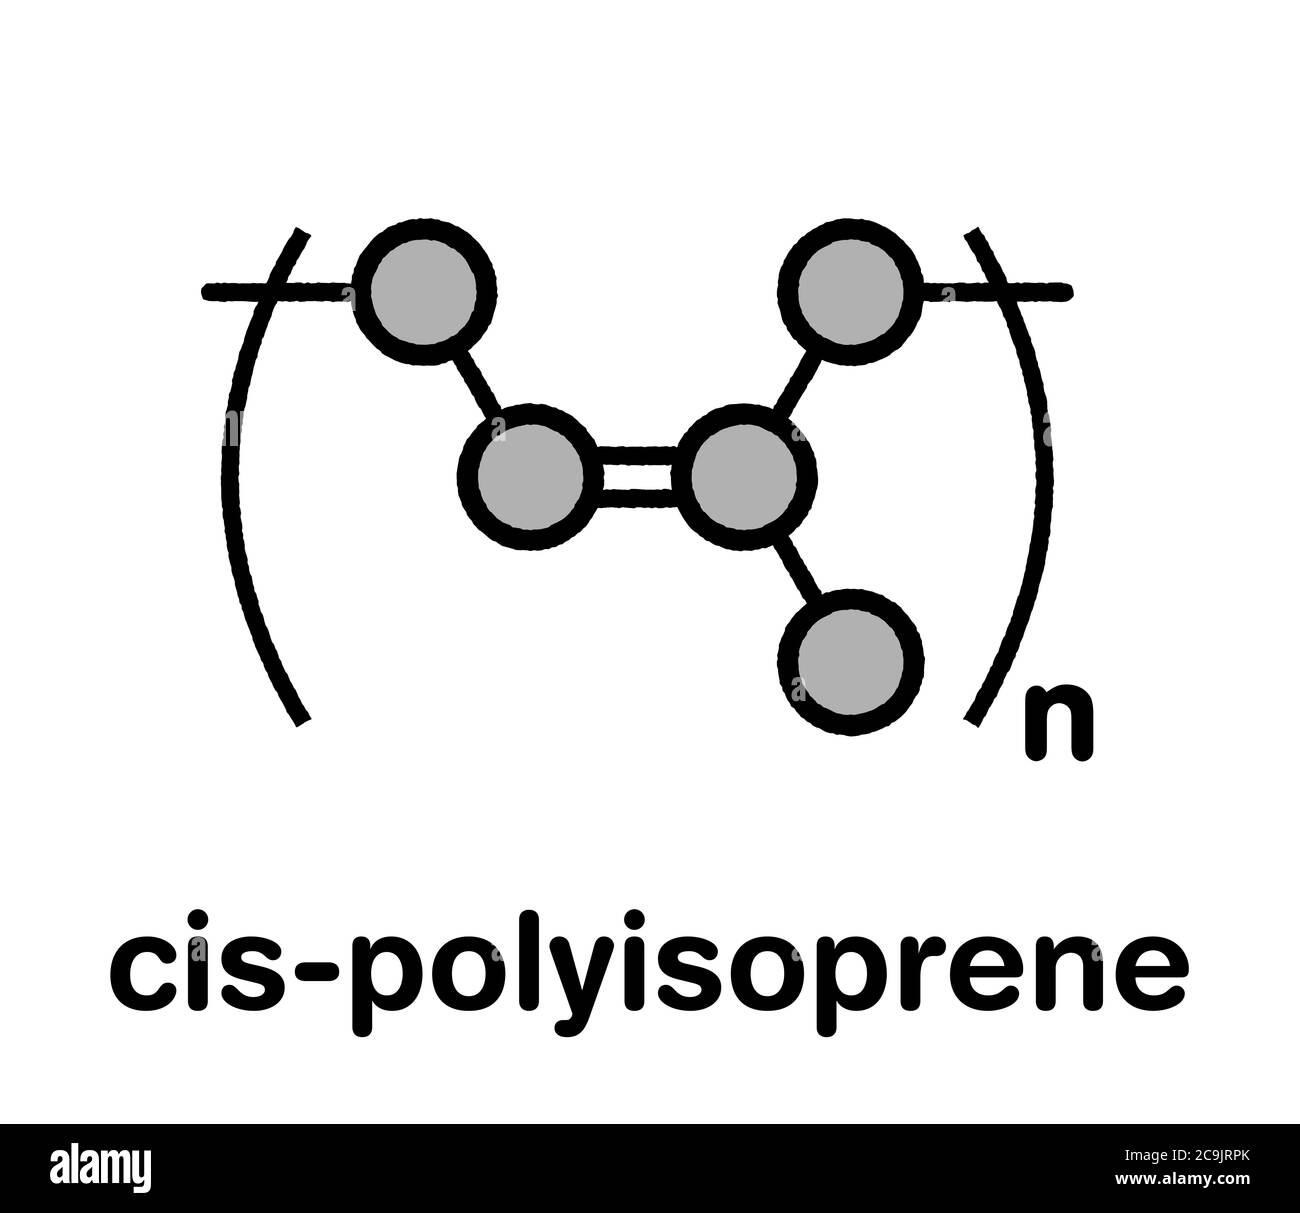 Naturkautschuk (cis-1,4-Polyisopren), chemische Struktur. Stilisierte Skelettformel: Atome werden als farbcodierte Kreise mit dicken schwarzen Umrissen dargestellt Stockfoto